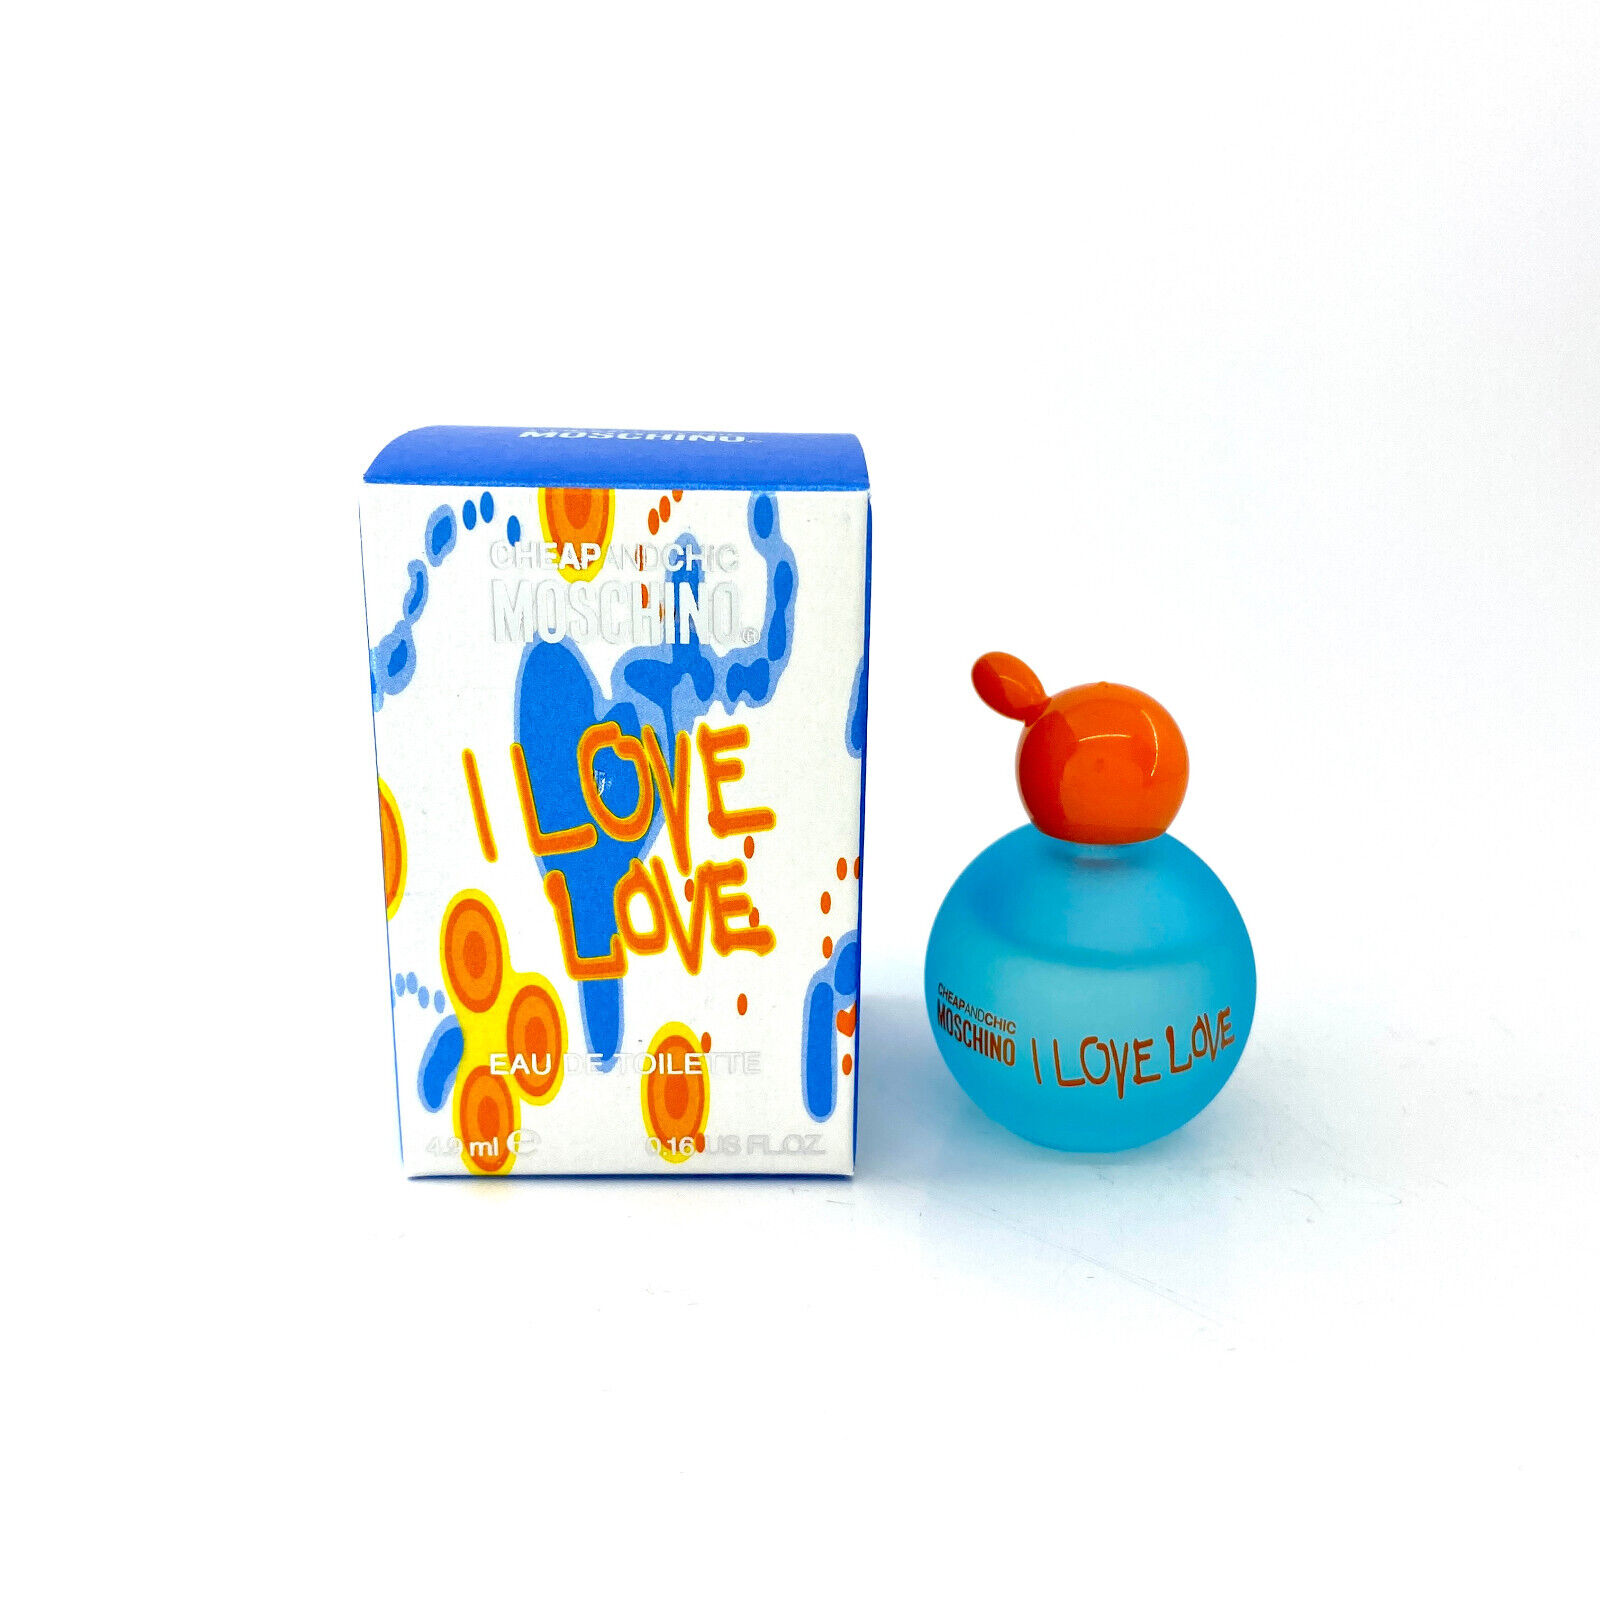 MOSCHINO I LOVE LOVE EAU DE TOILETTE 4.9 ML. 0.16 FL.OZ. MINI PERFUME NEW IN BOX